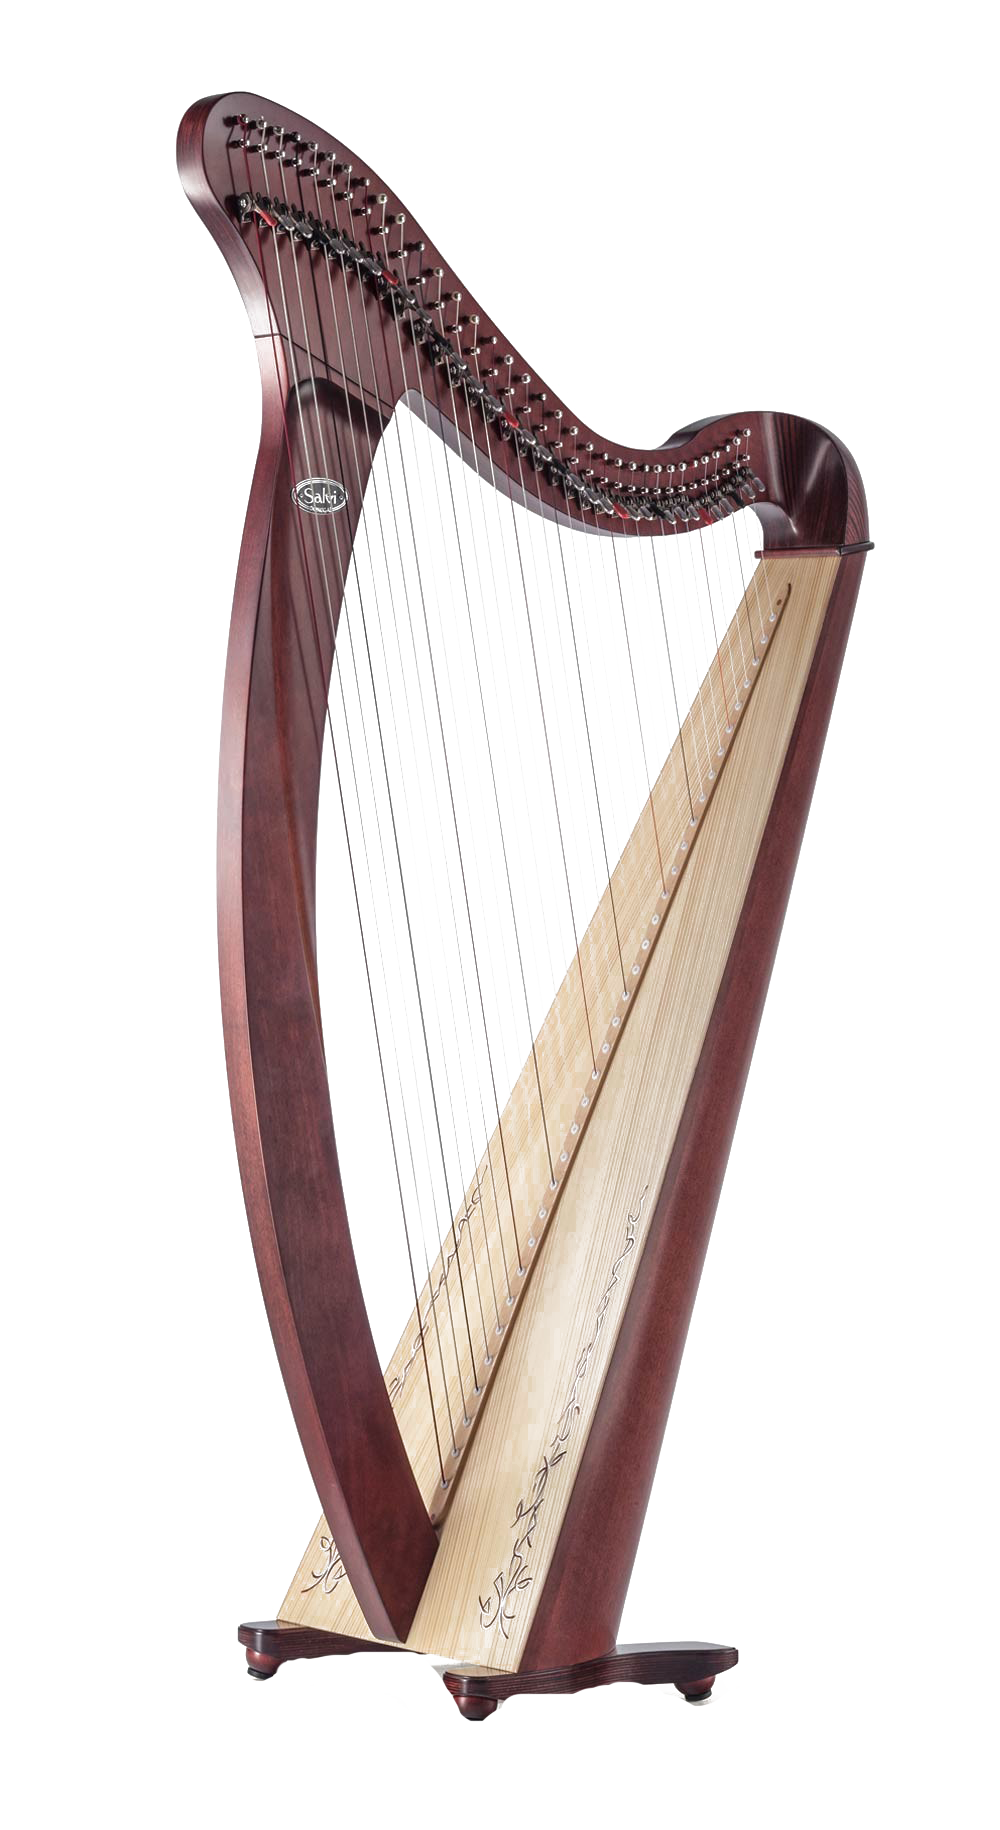 Petite harpe portable PNG Télécharger limage